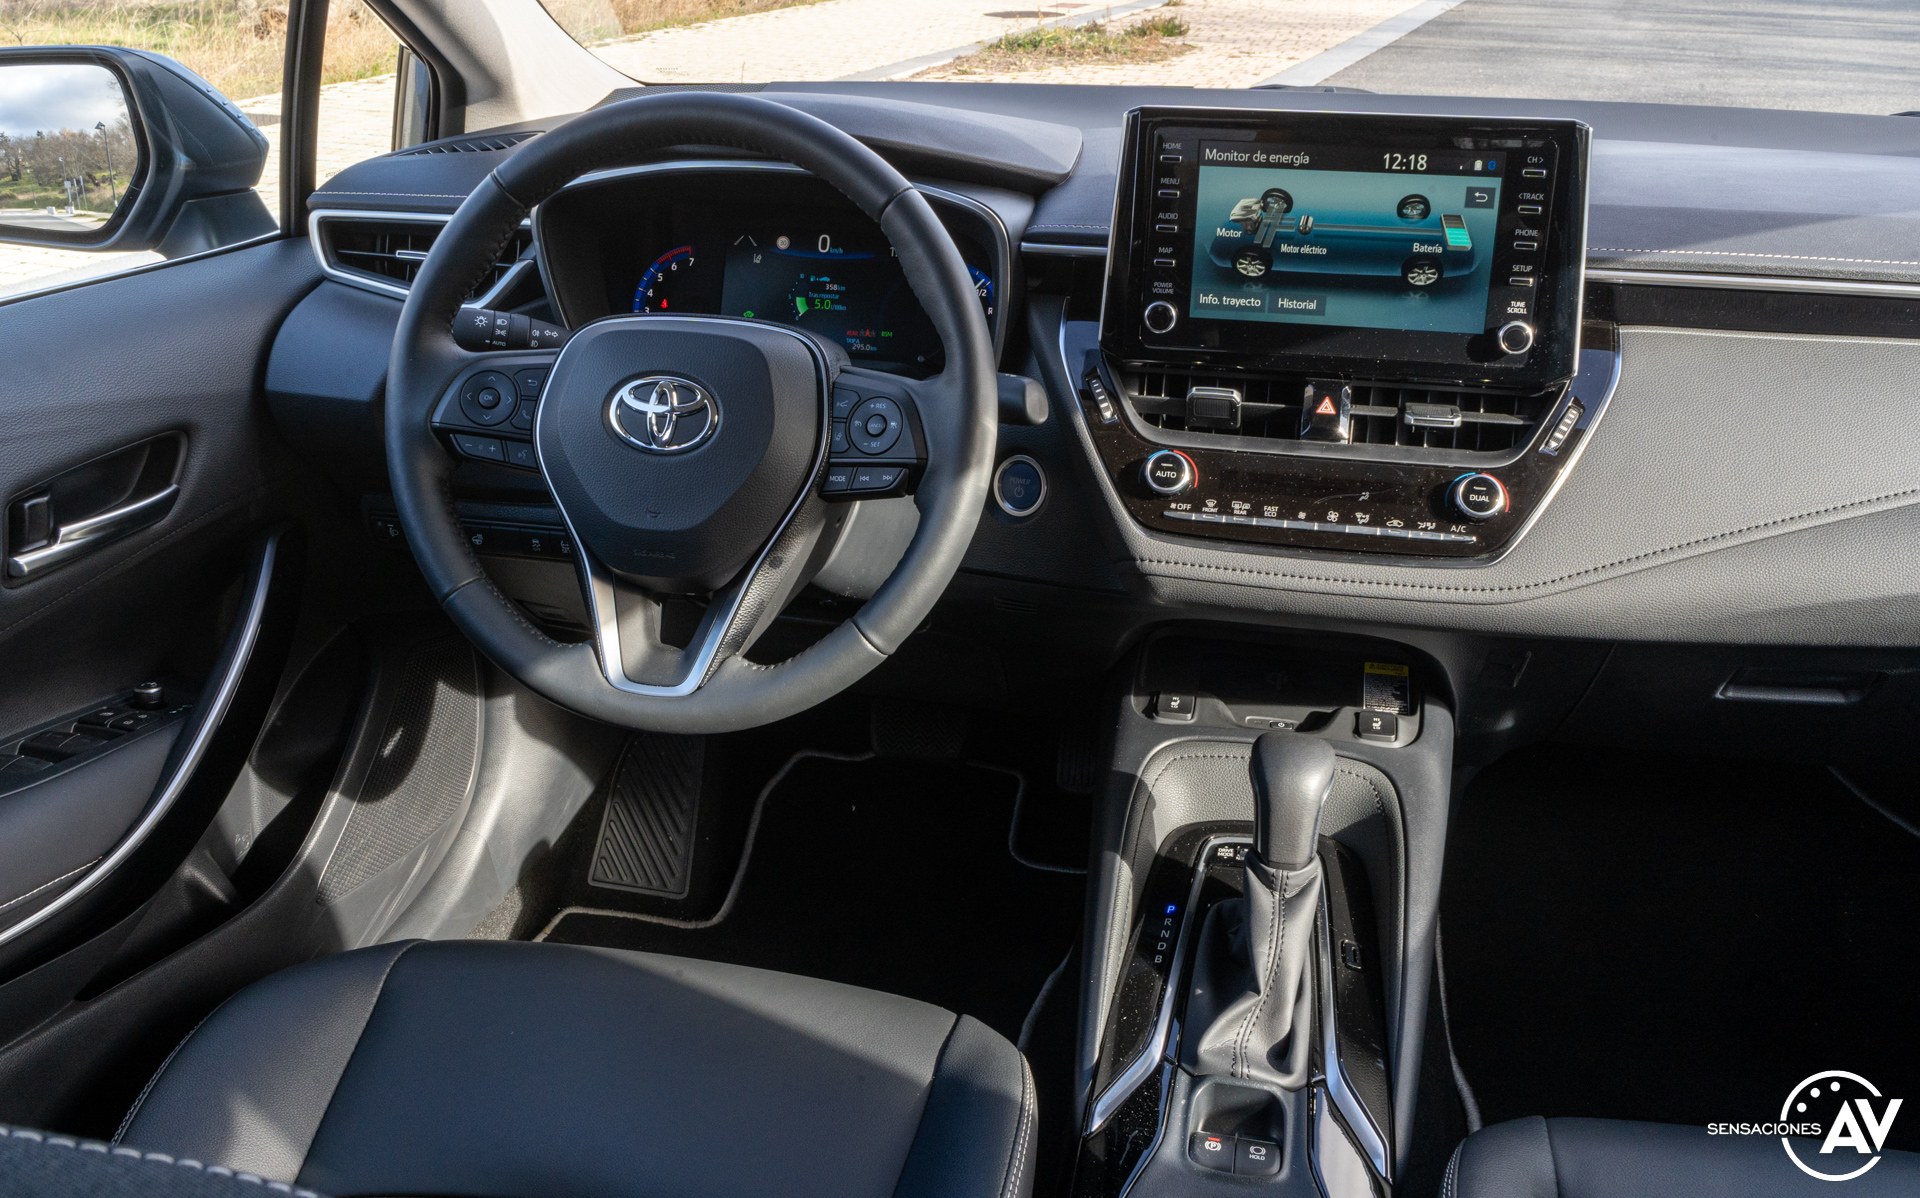 Puesto de conduccion Toyota Corolla Sedan - Prueba Toyota Corolla Sedán 125H Advance: Una berlina económica, híbrida y con consumos muy bajos